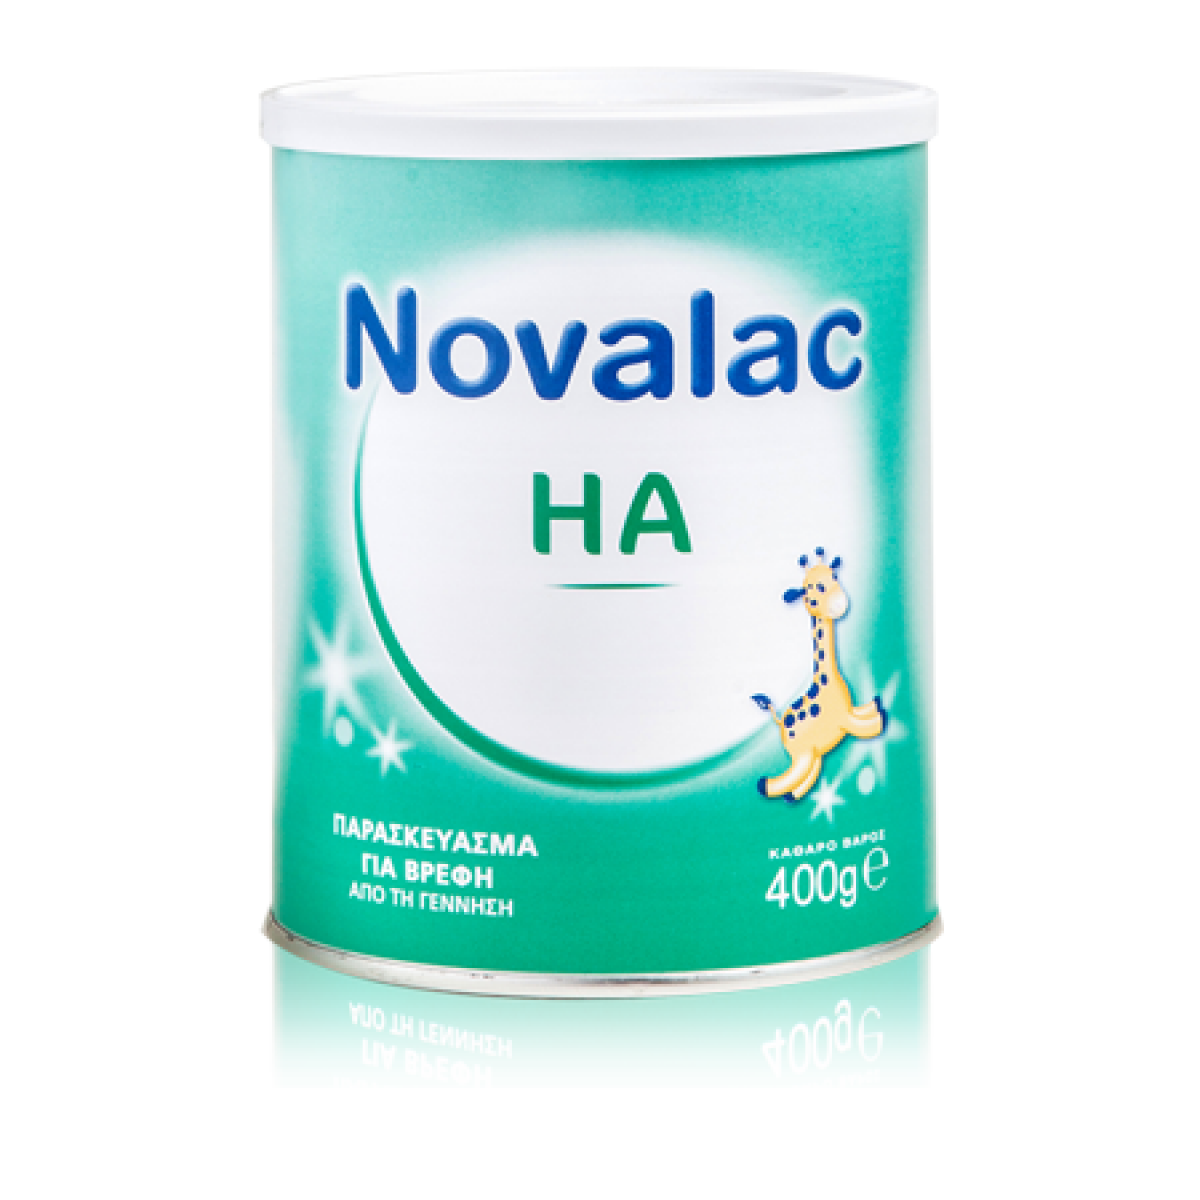 Novalac HA Γάλα Σκόνη 1ης Βρεφικής Ηλικίας Για την Πρόληψη Εκδήλωσης Αλλεργιών 400g